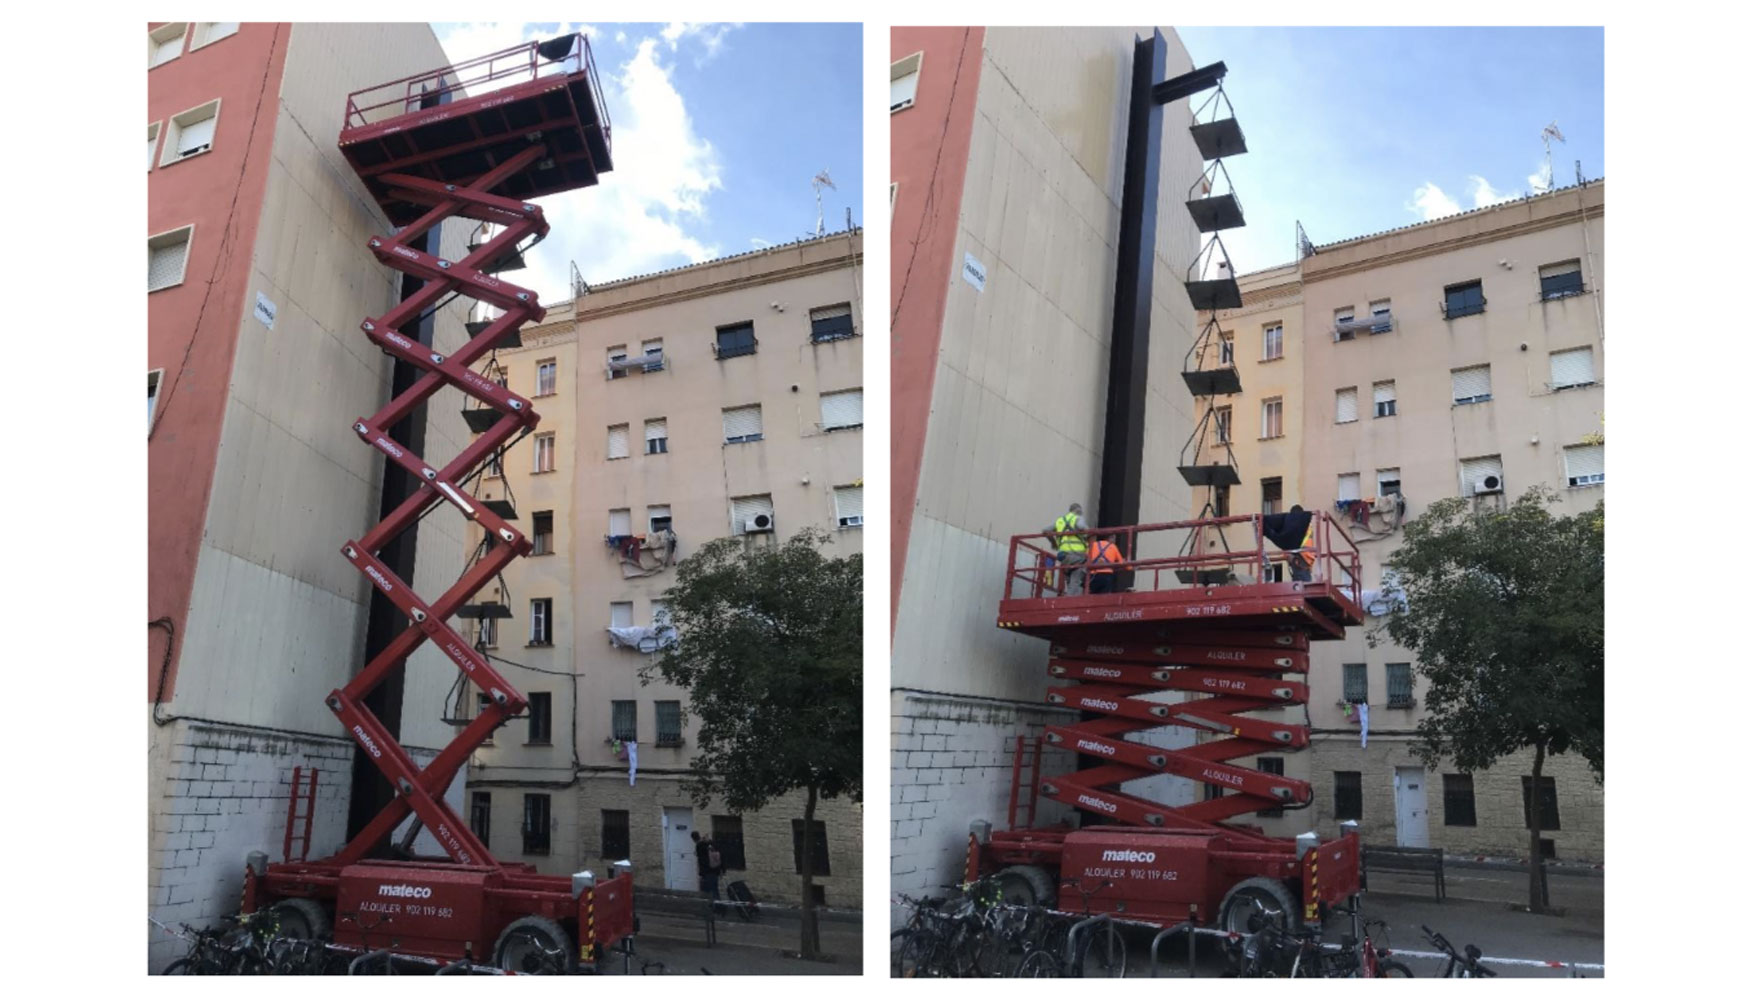 Plataforma de Mateco trabajando en el mantenimiento del monumento barcelons Balanza Romana